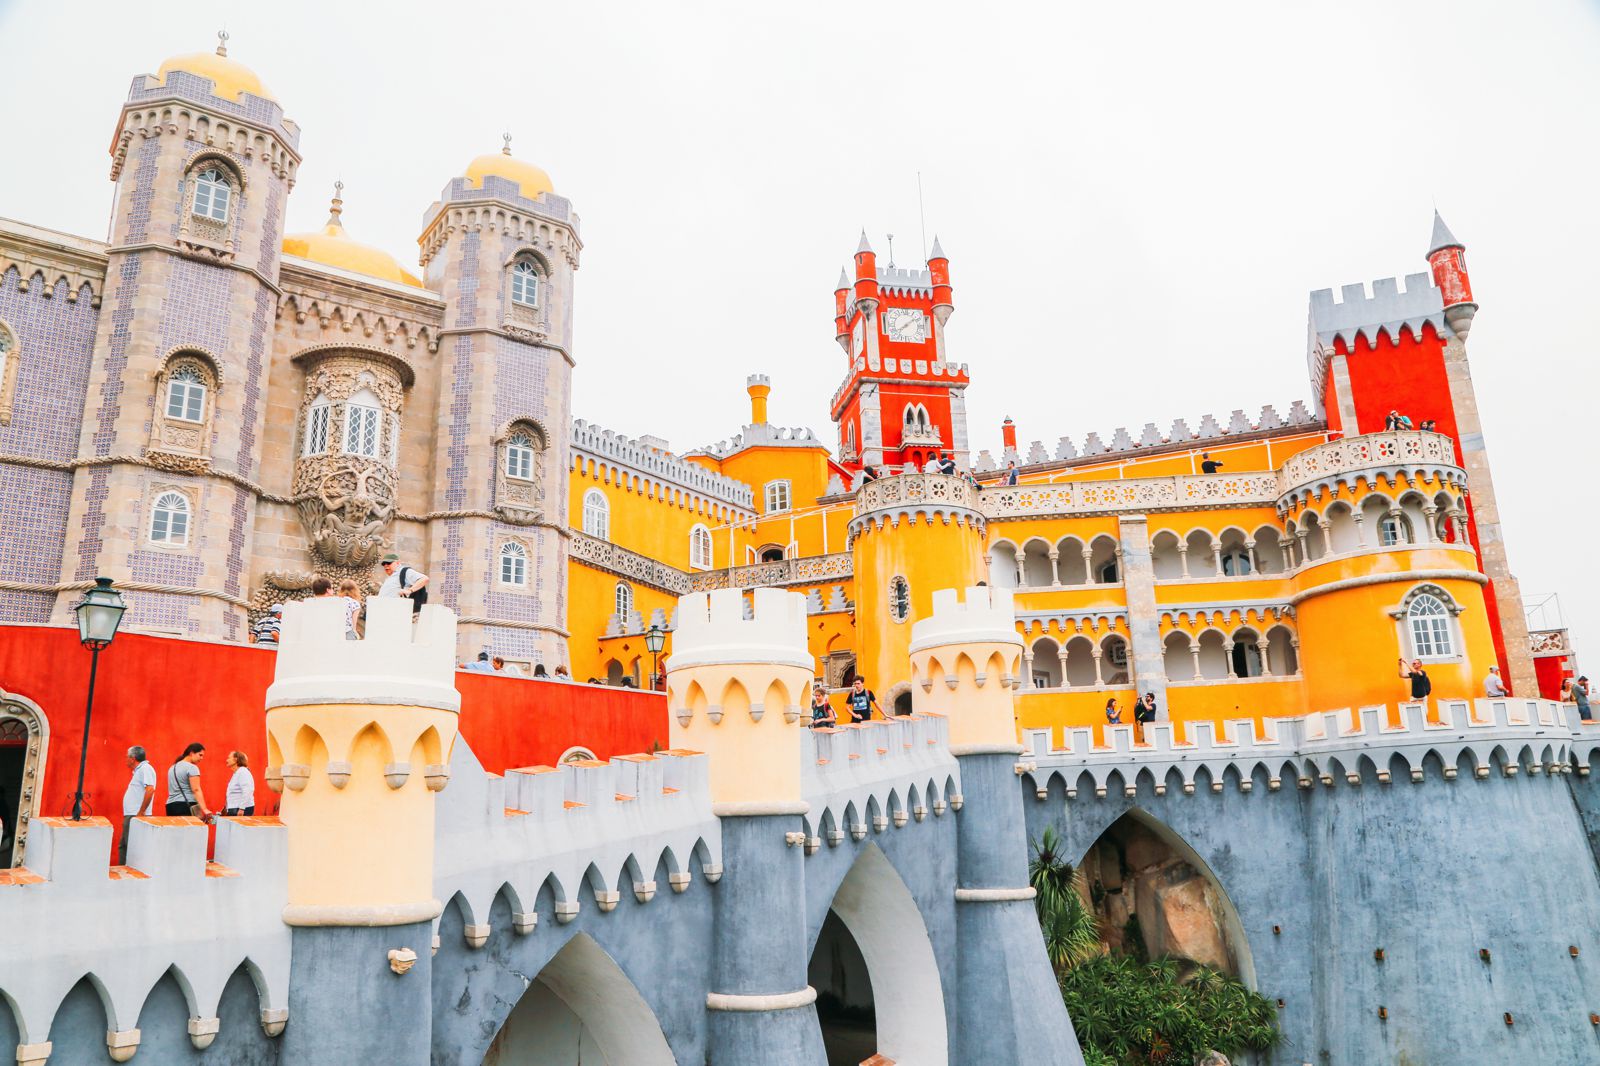 Замок пена в португалии